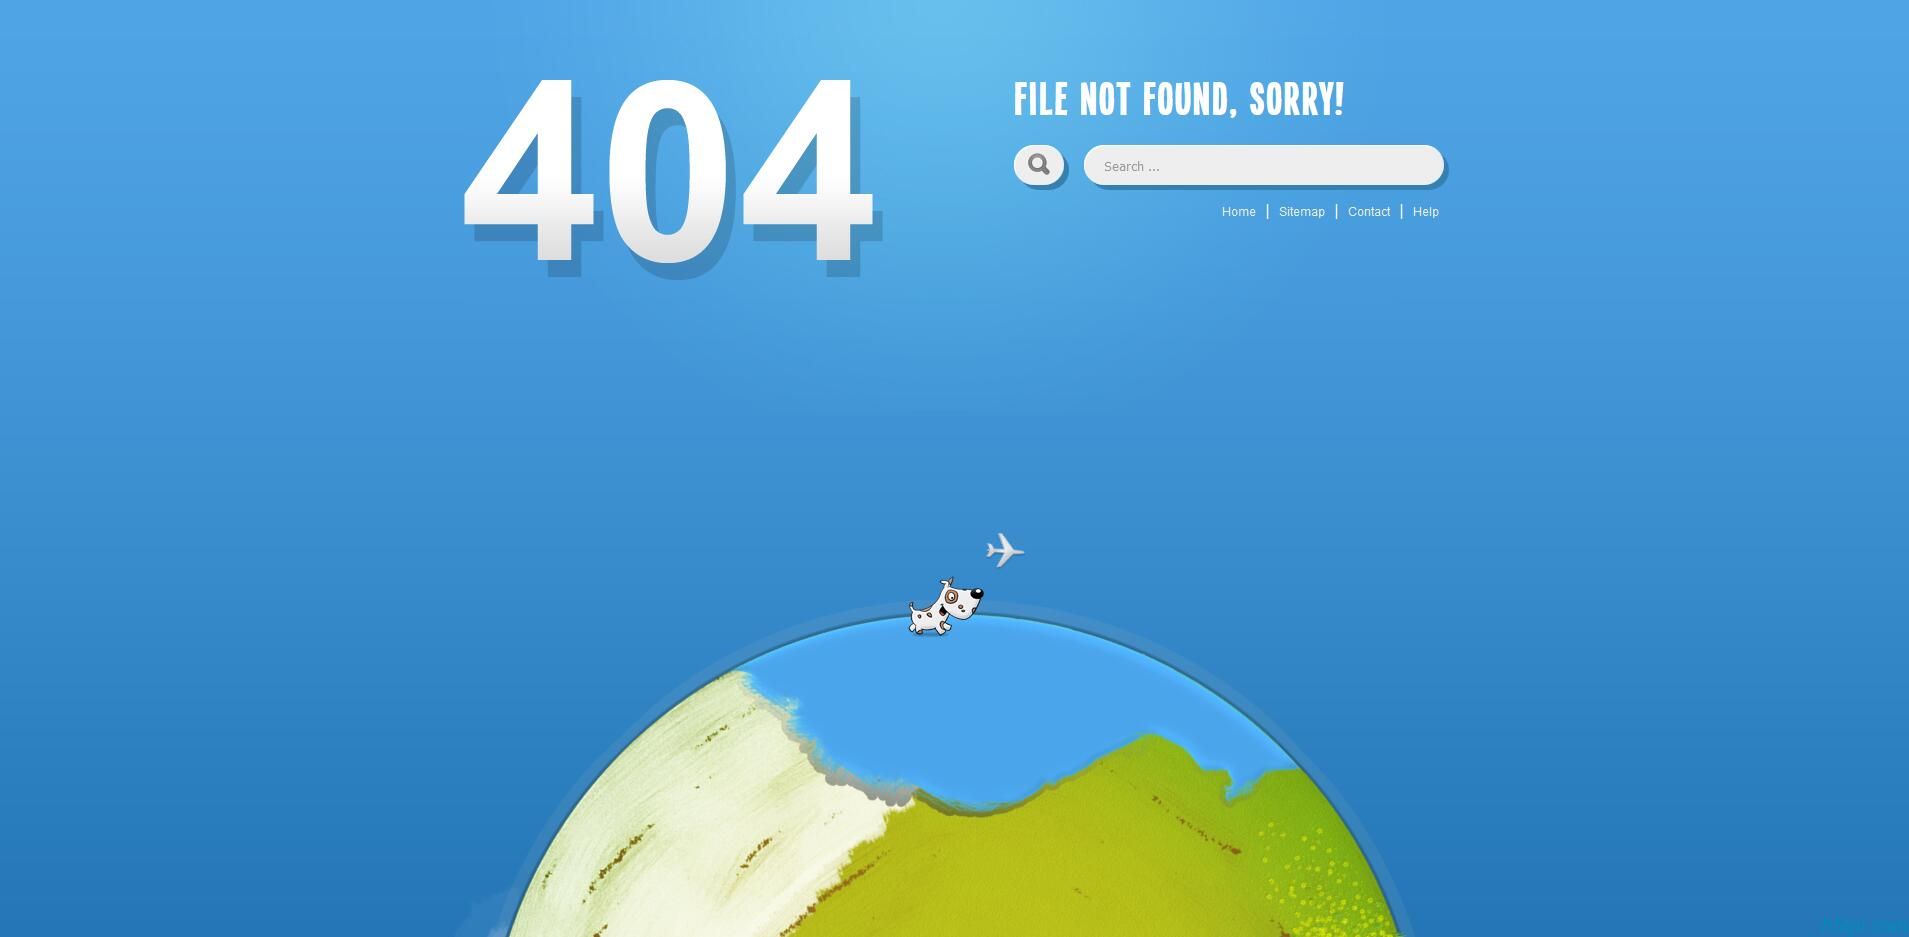 小狗绕地球奔跑404页面是一款可爱的小动物在旋转的地球上奔跑404网站错误页面